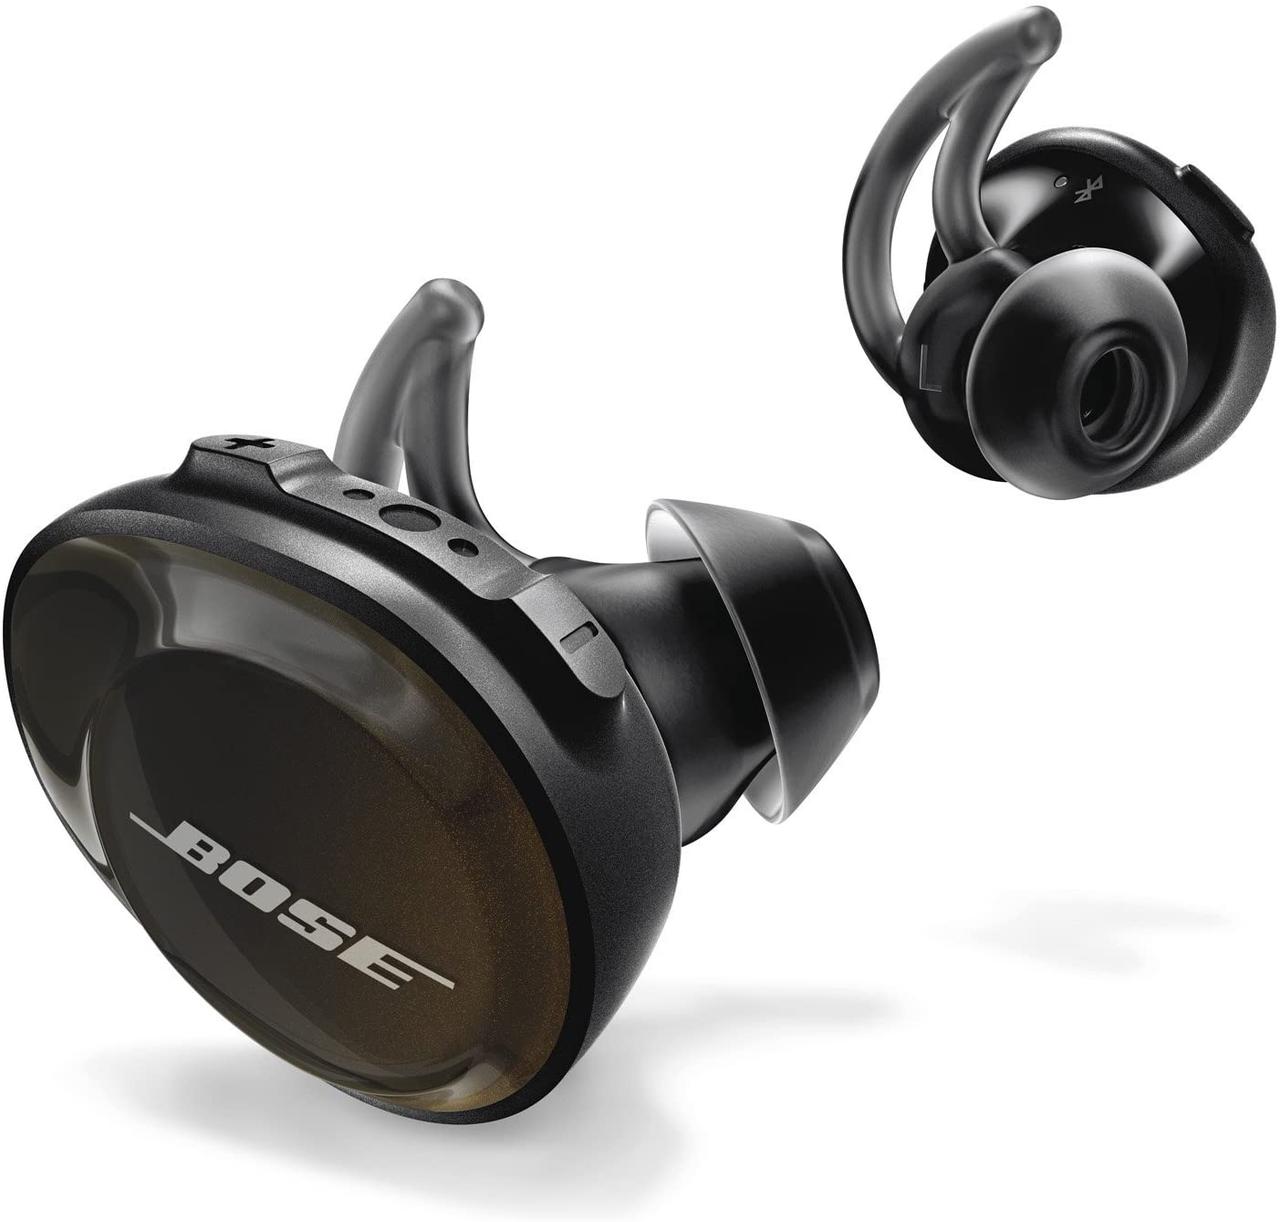 完全ワイヤレスでBOSEの音が楽しめる｢Bose SoundSport Free wireless headphones｣が1万4900円だと!? 買おう。